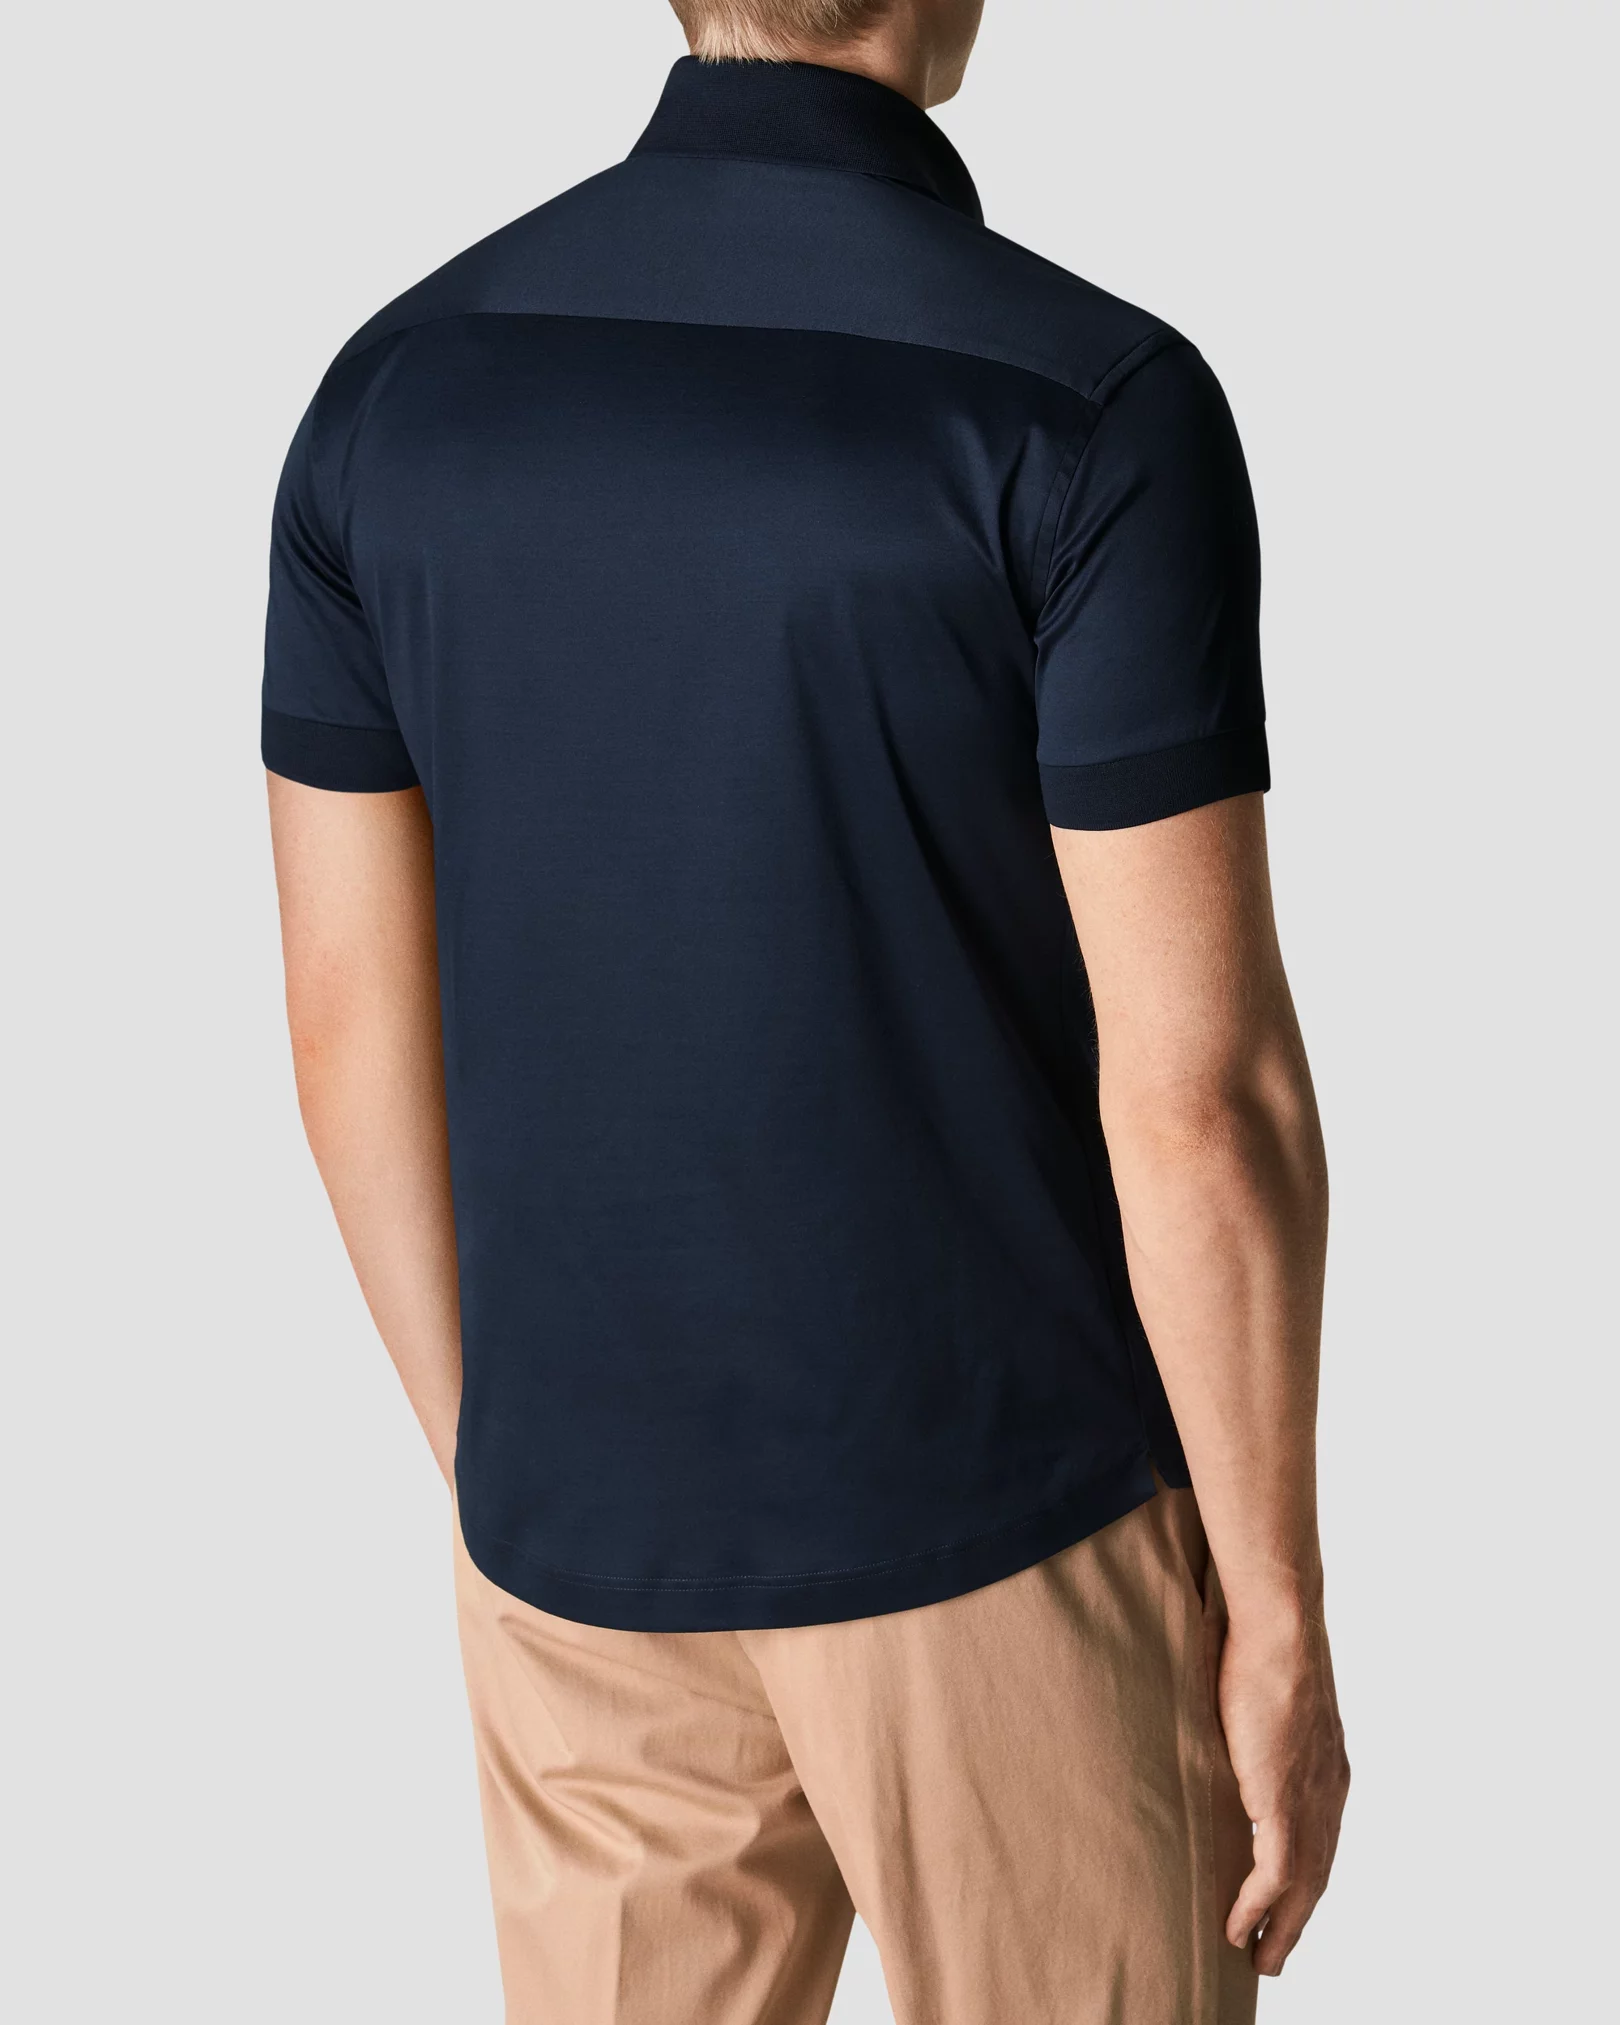 Navy blue Jersey Shirt - Eton